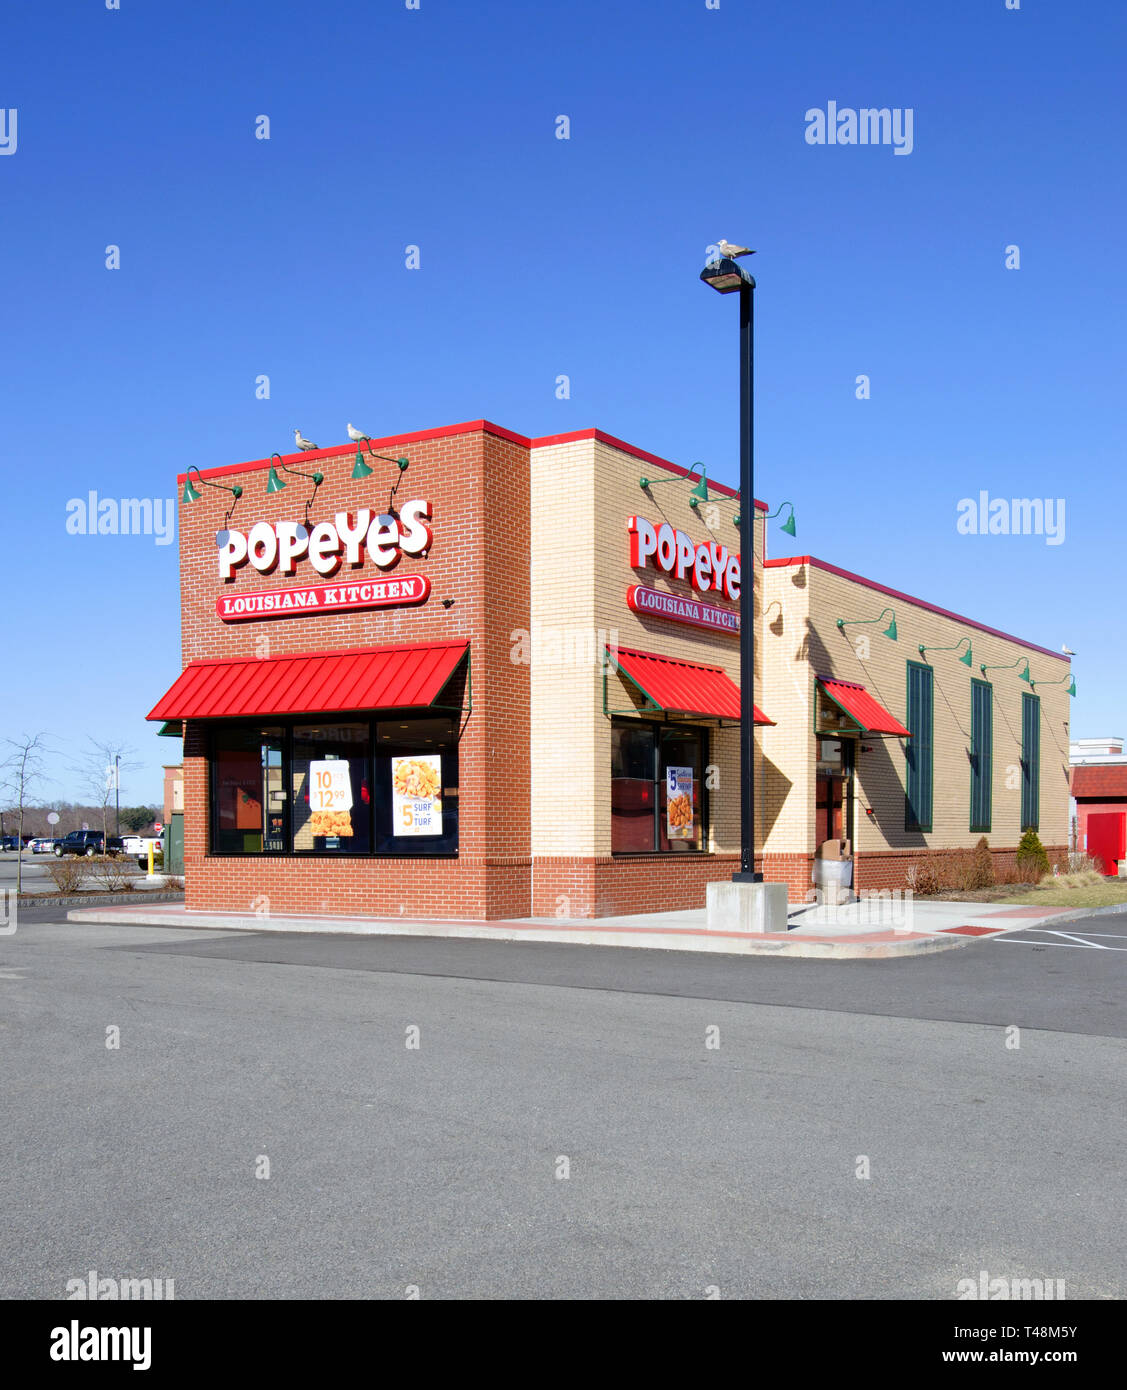 Popeyes fast food Restaurant, einer US-Kette für Southern Fried Chicken, außen mit einem sonnigen blauen Himmel in New Bedford, Massachusetts, USA Stockfoto